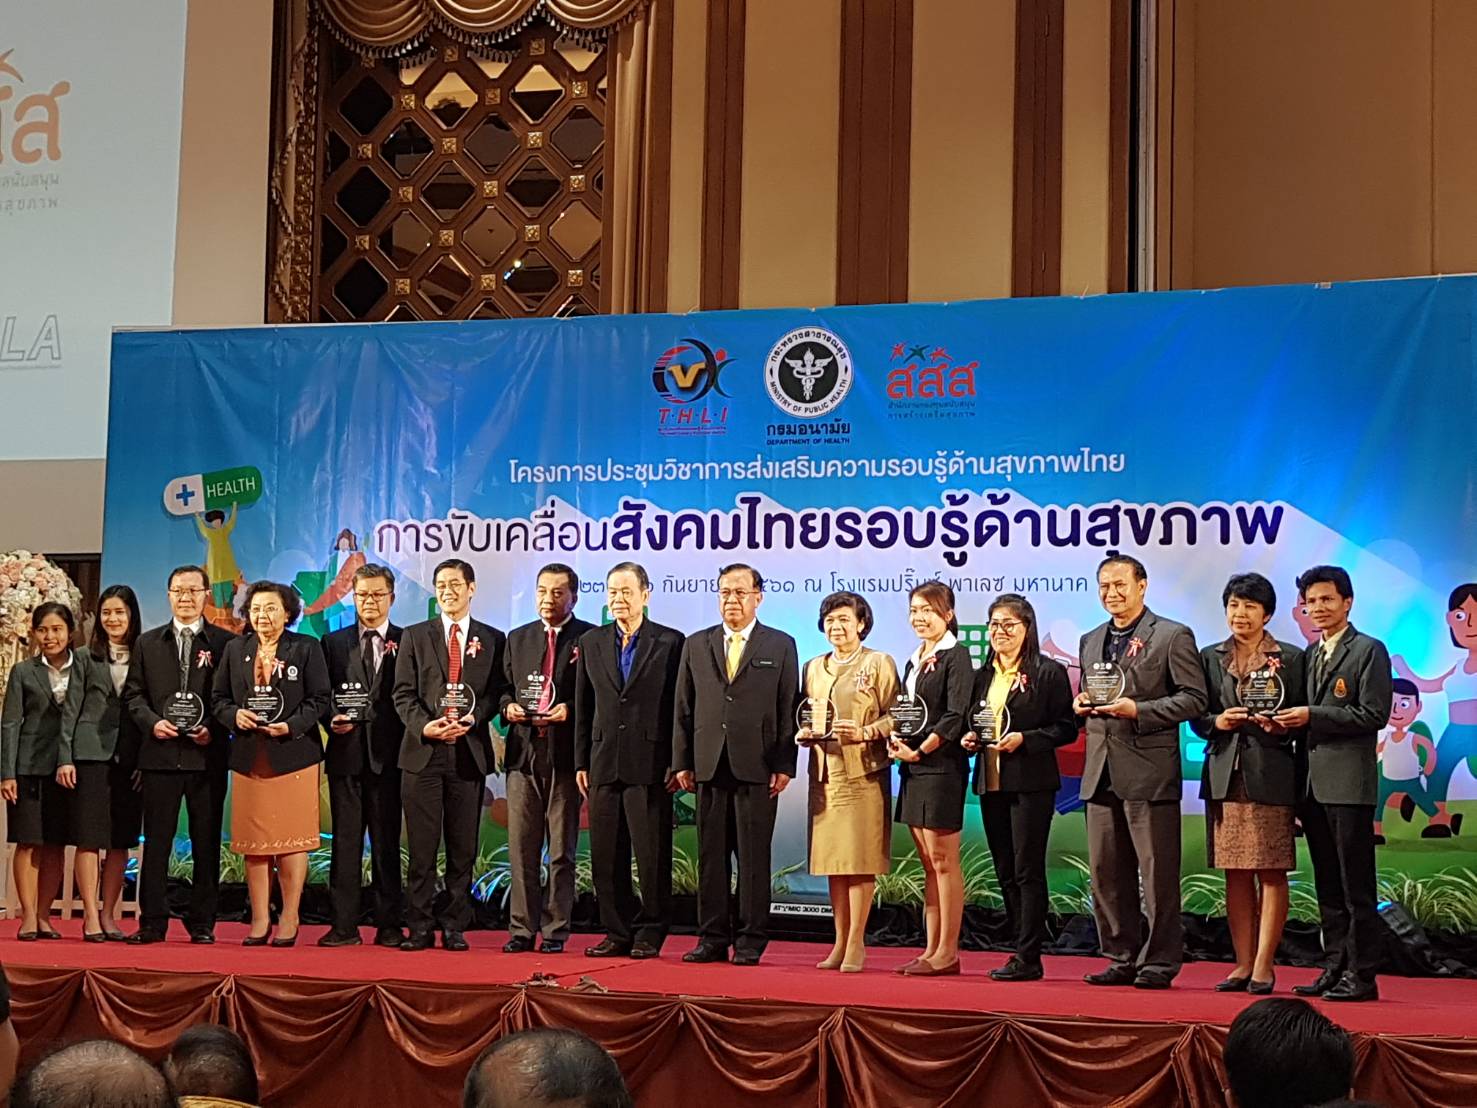 สสส. รับโล่เชิดชูเกียรติยกระดับองค์กรให้เป็นองค์กรรอบรู้ด้านสุขภาพ thaihealth